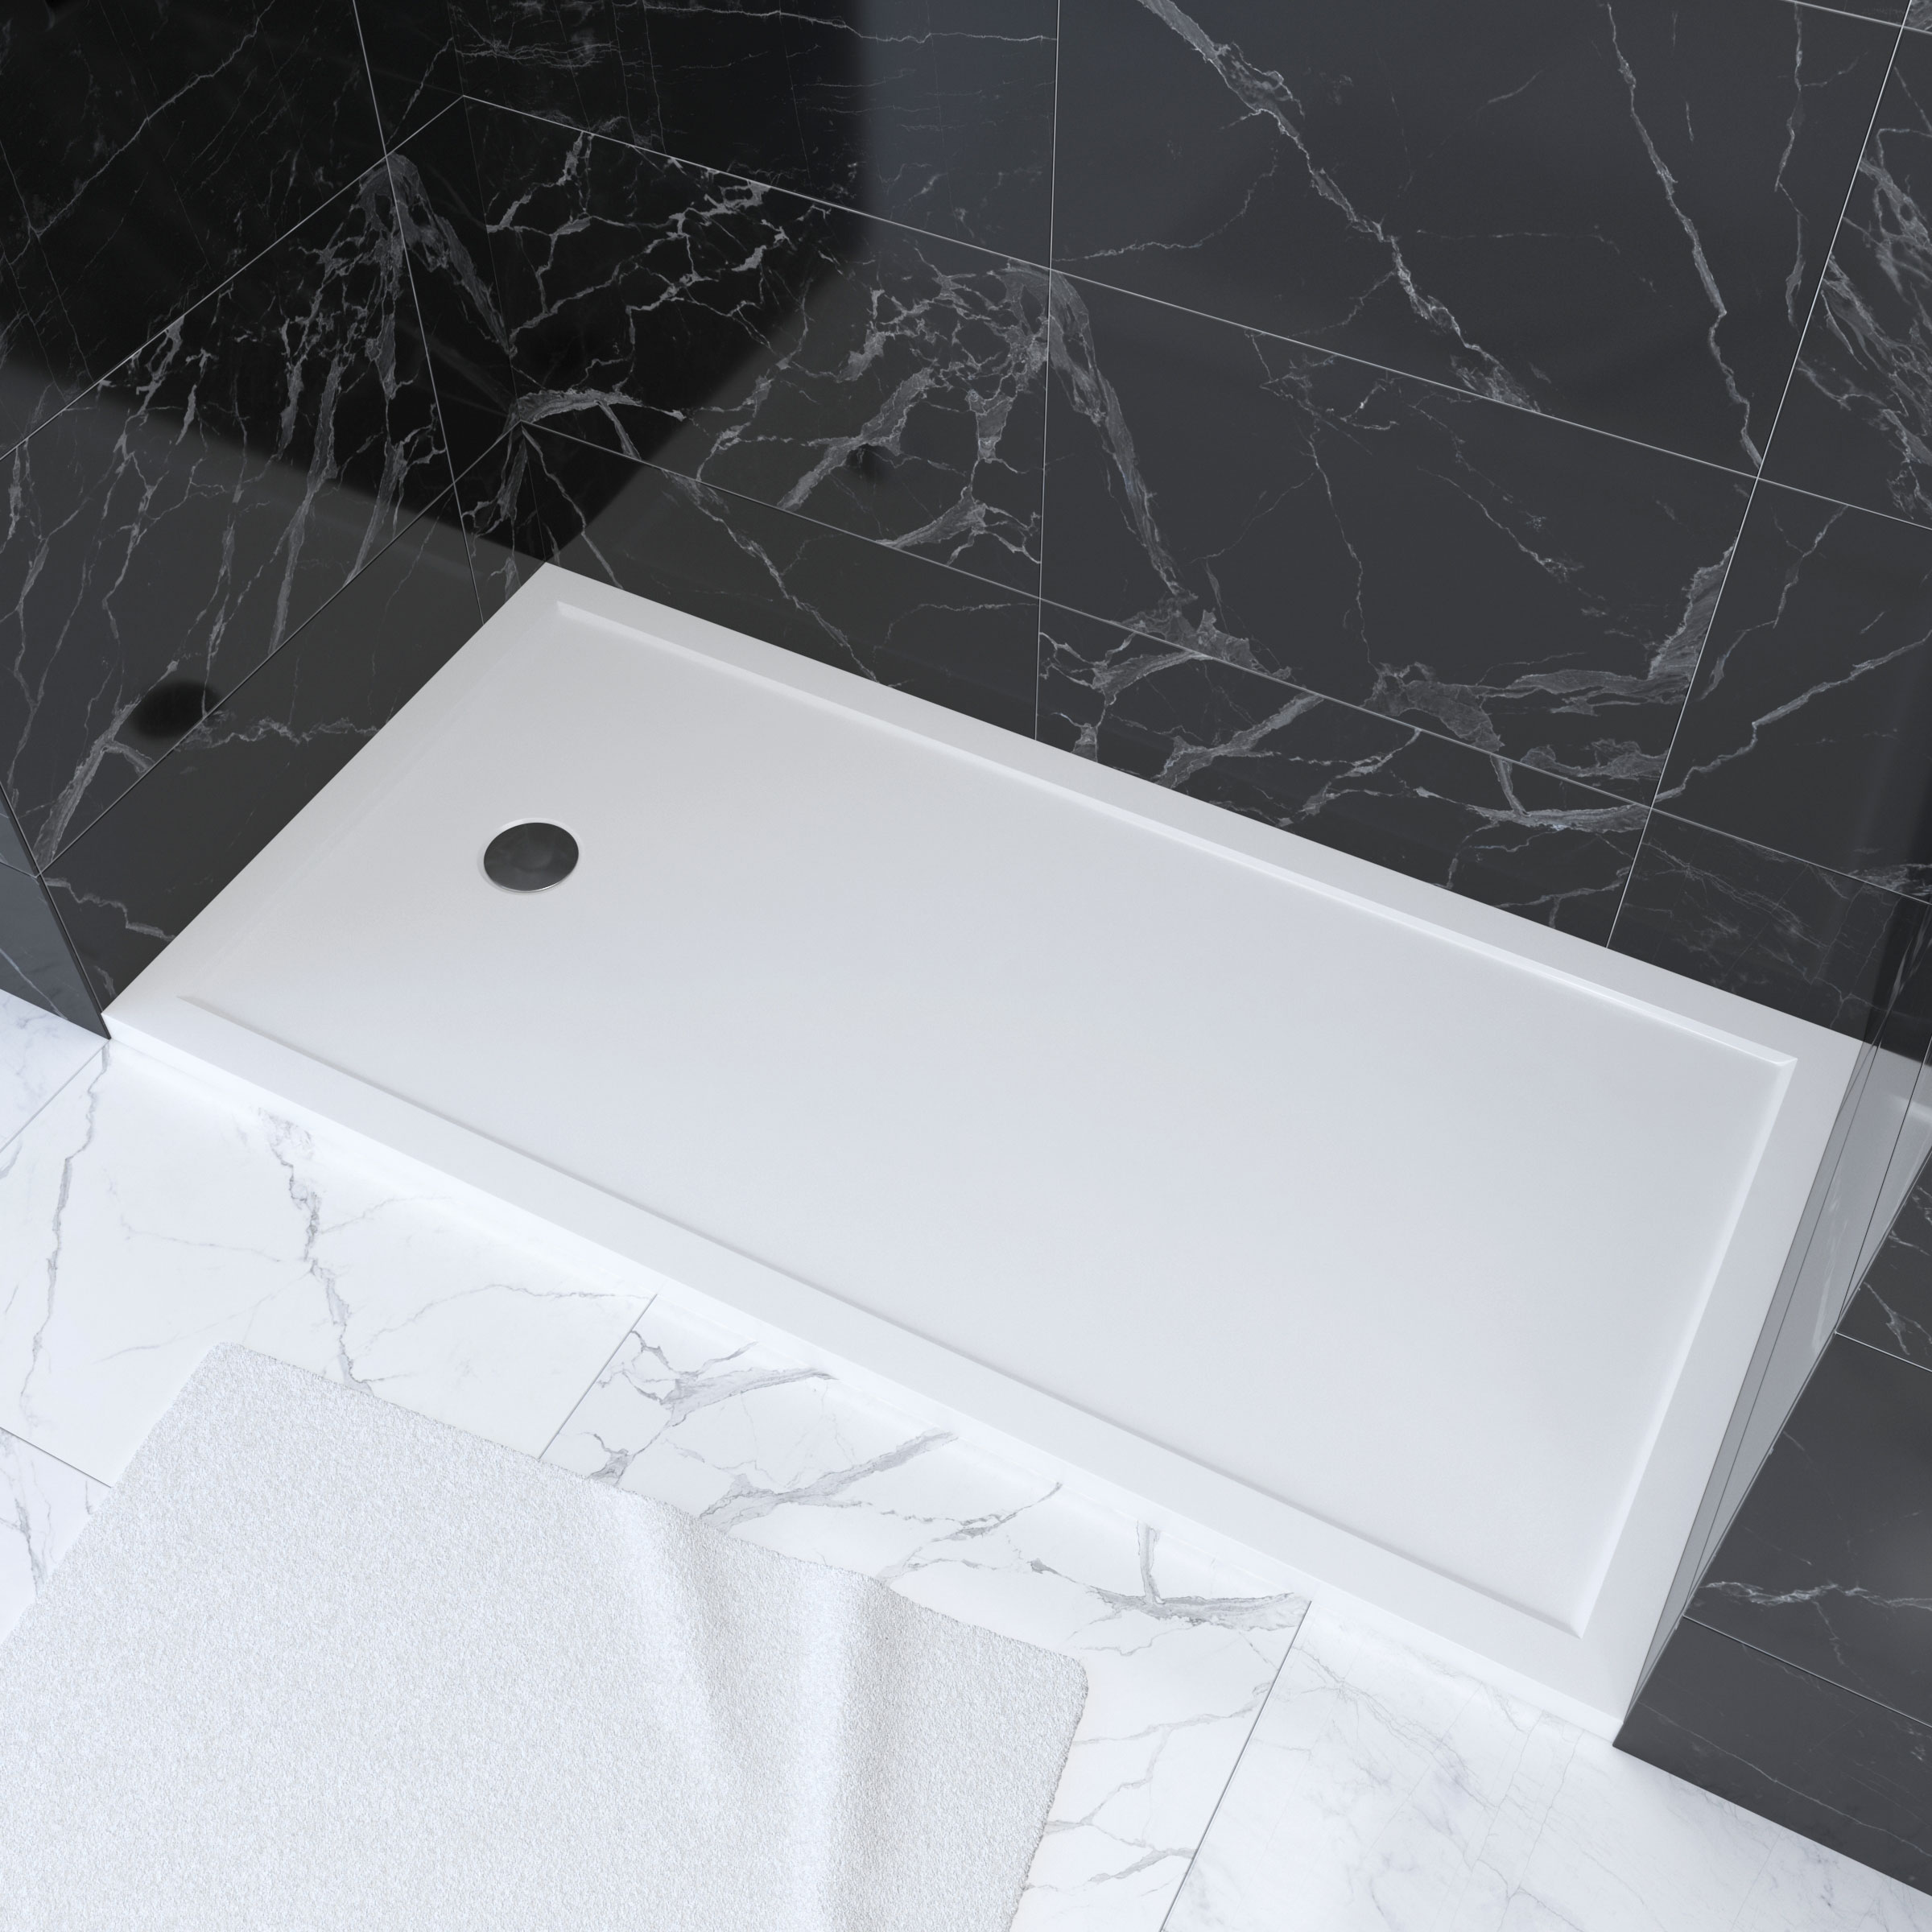 Receveur acrylique blanc 80x160x5,5cm - WHITENESS 160 - Aurlane